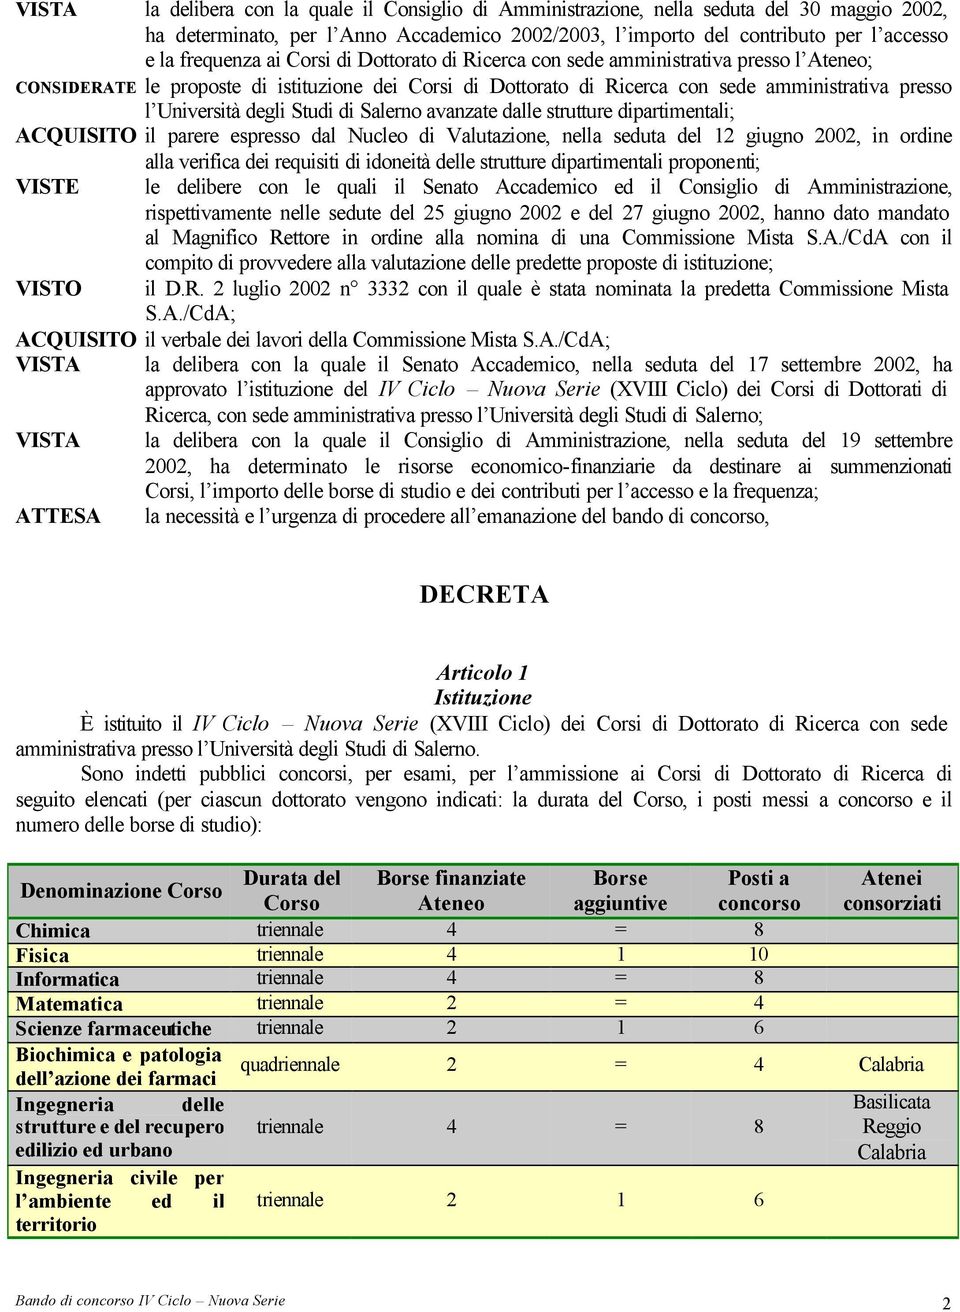 Studi di Salerno avanzate dalle strutture dipartimentali; ACQUISITO il parere espresso dal Nucleo di Valutazione, nella seduta del 12 giugno 2002, in ordine alla verifica dei requisiti di idoneità